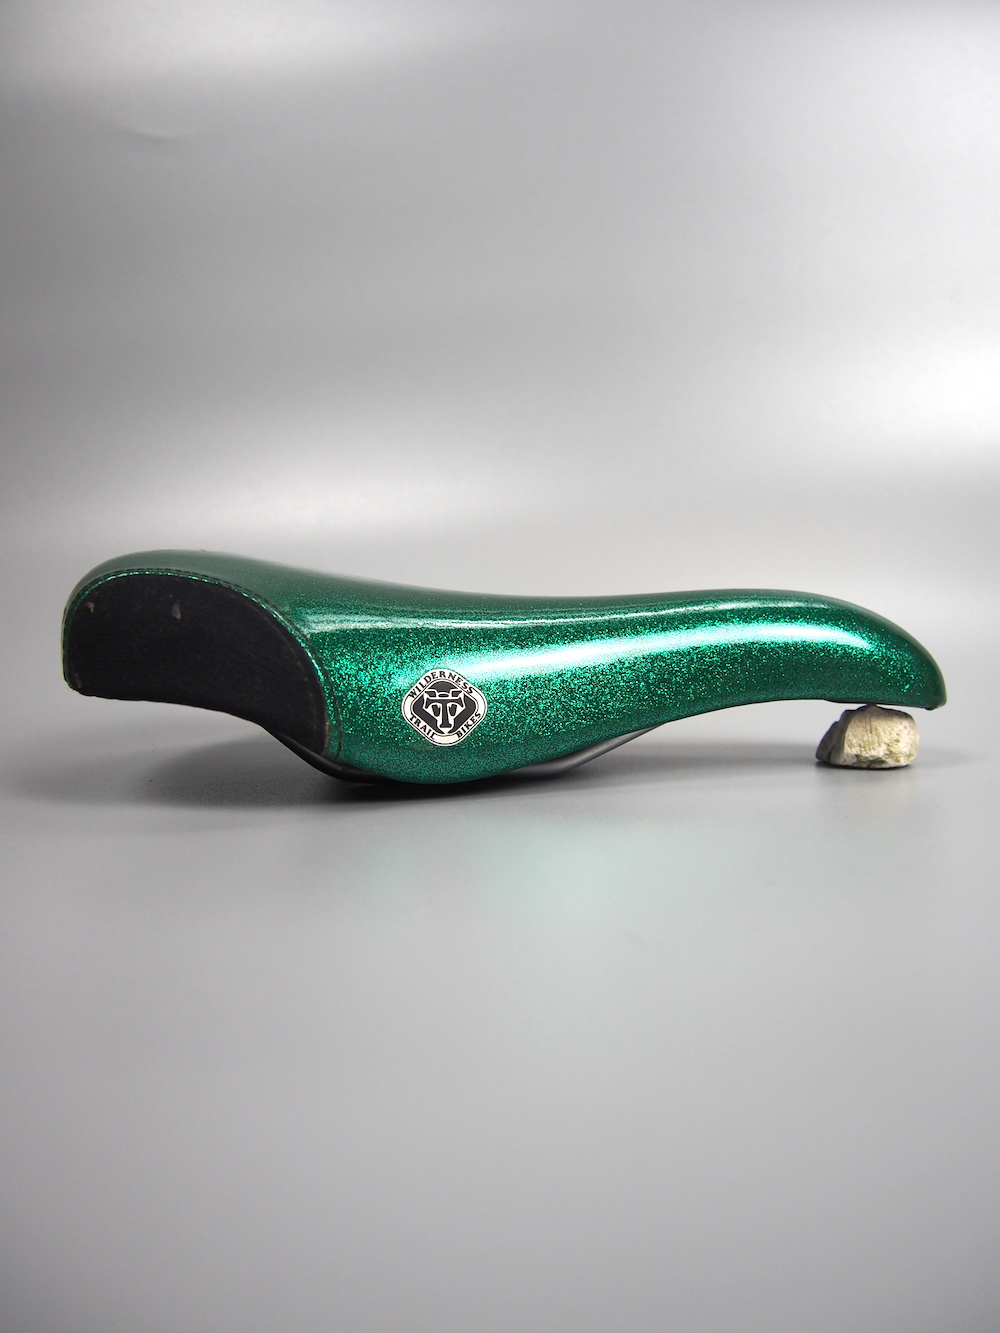 WTB SST X Flash saddle – Green glitter